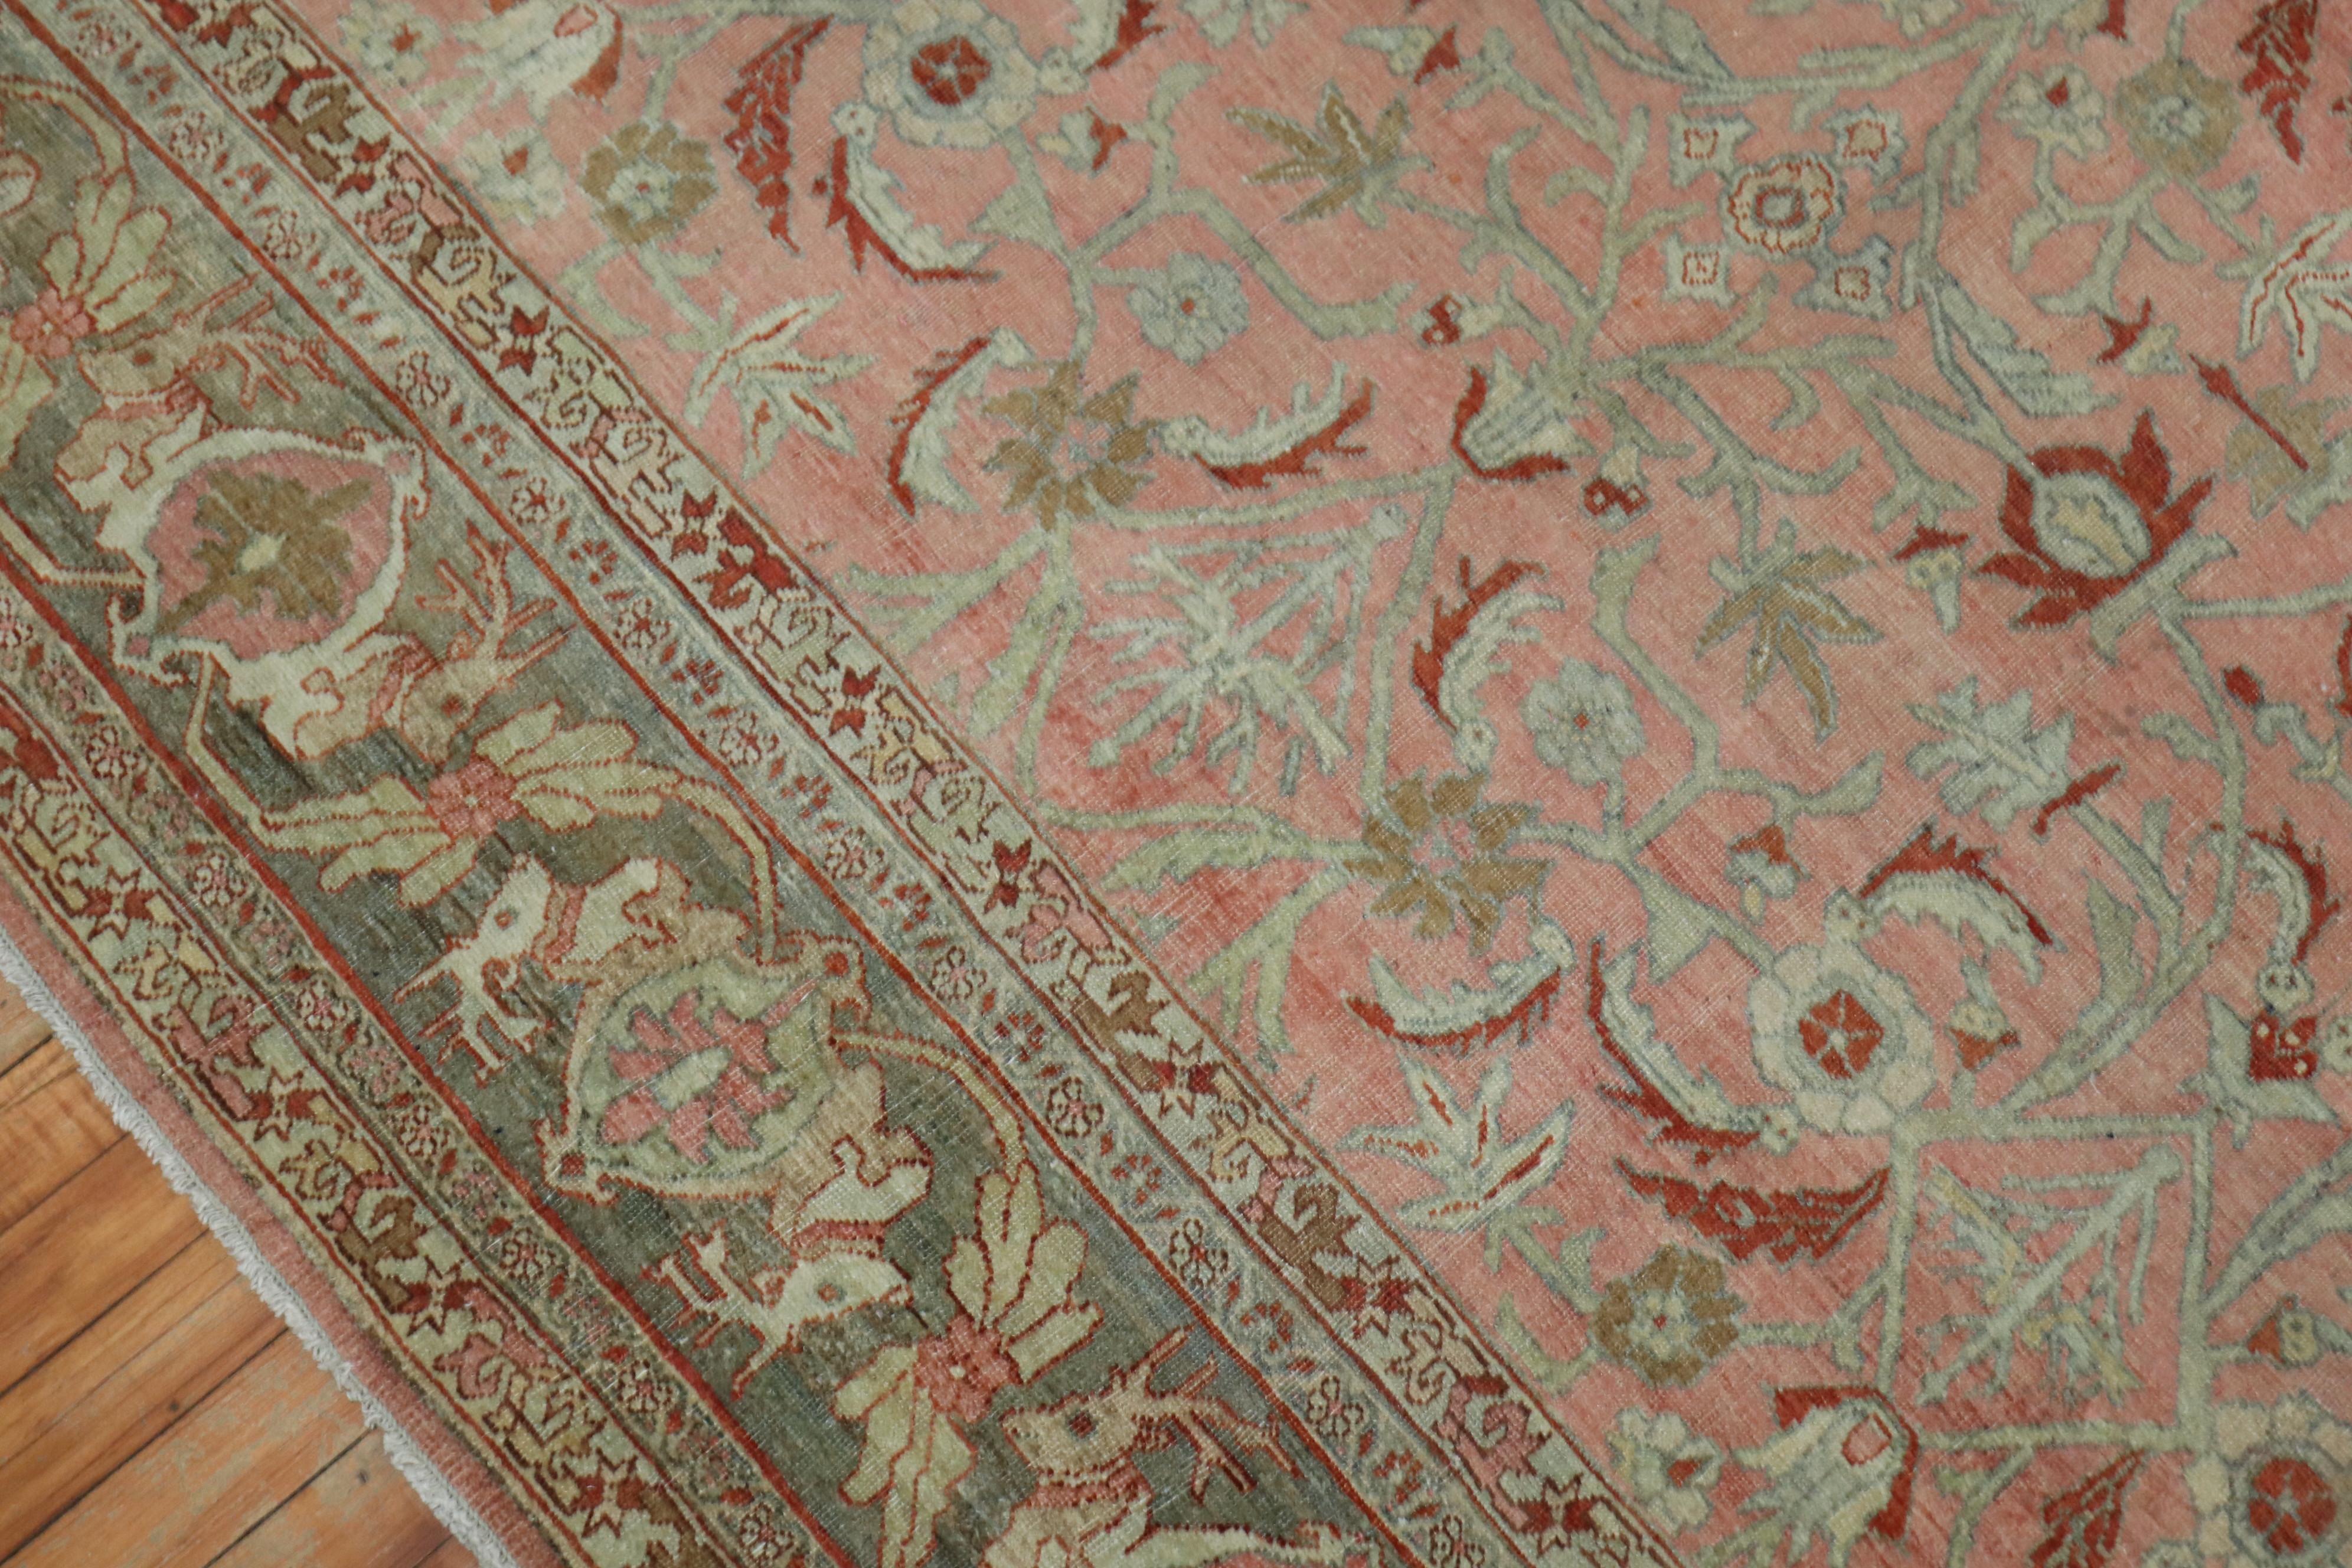 Hand-Woven Deer Head Pink Antique Persian Bidjar Pictorial Room Size Rug For Sale